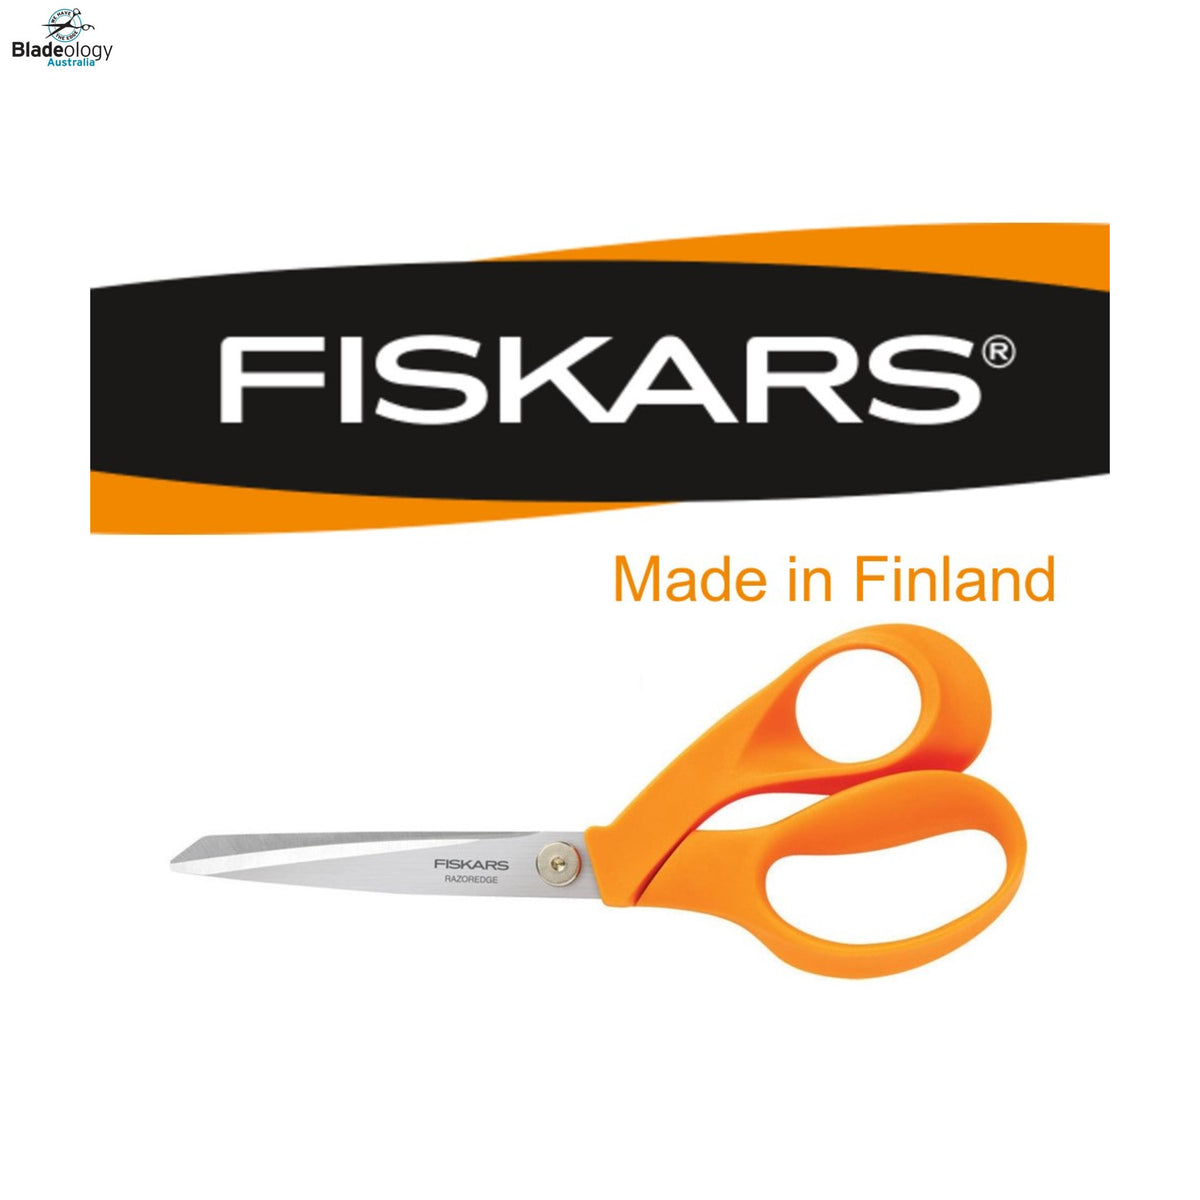 Fiskars of Finland logo